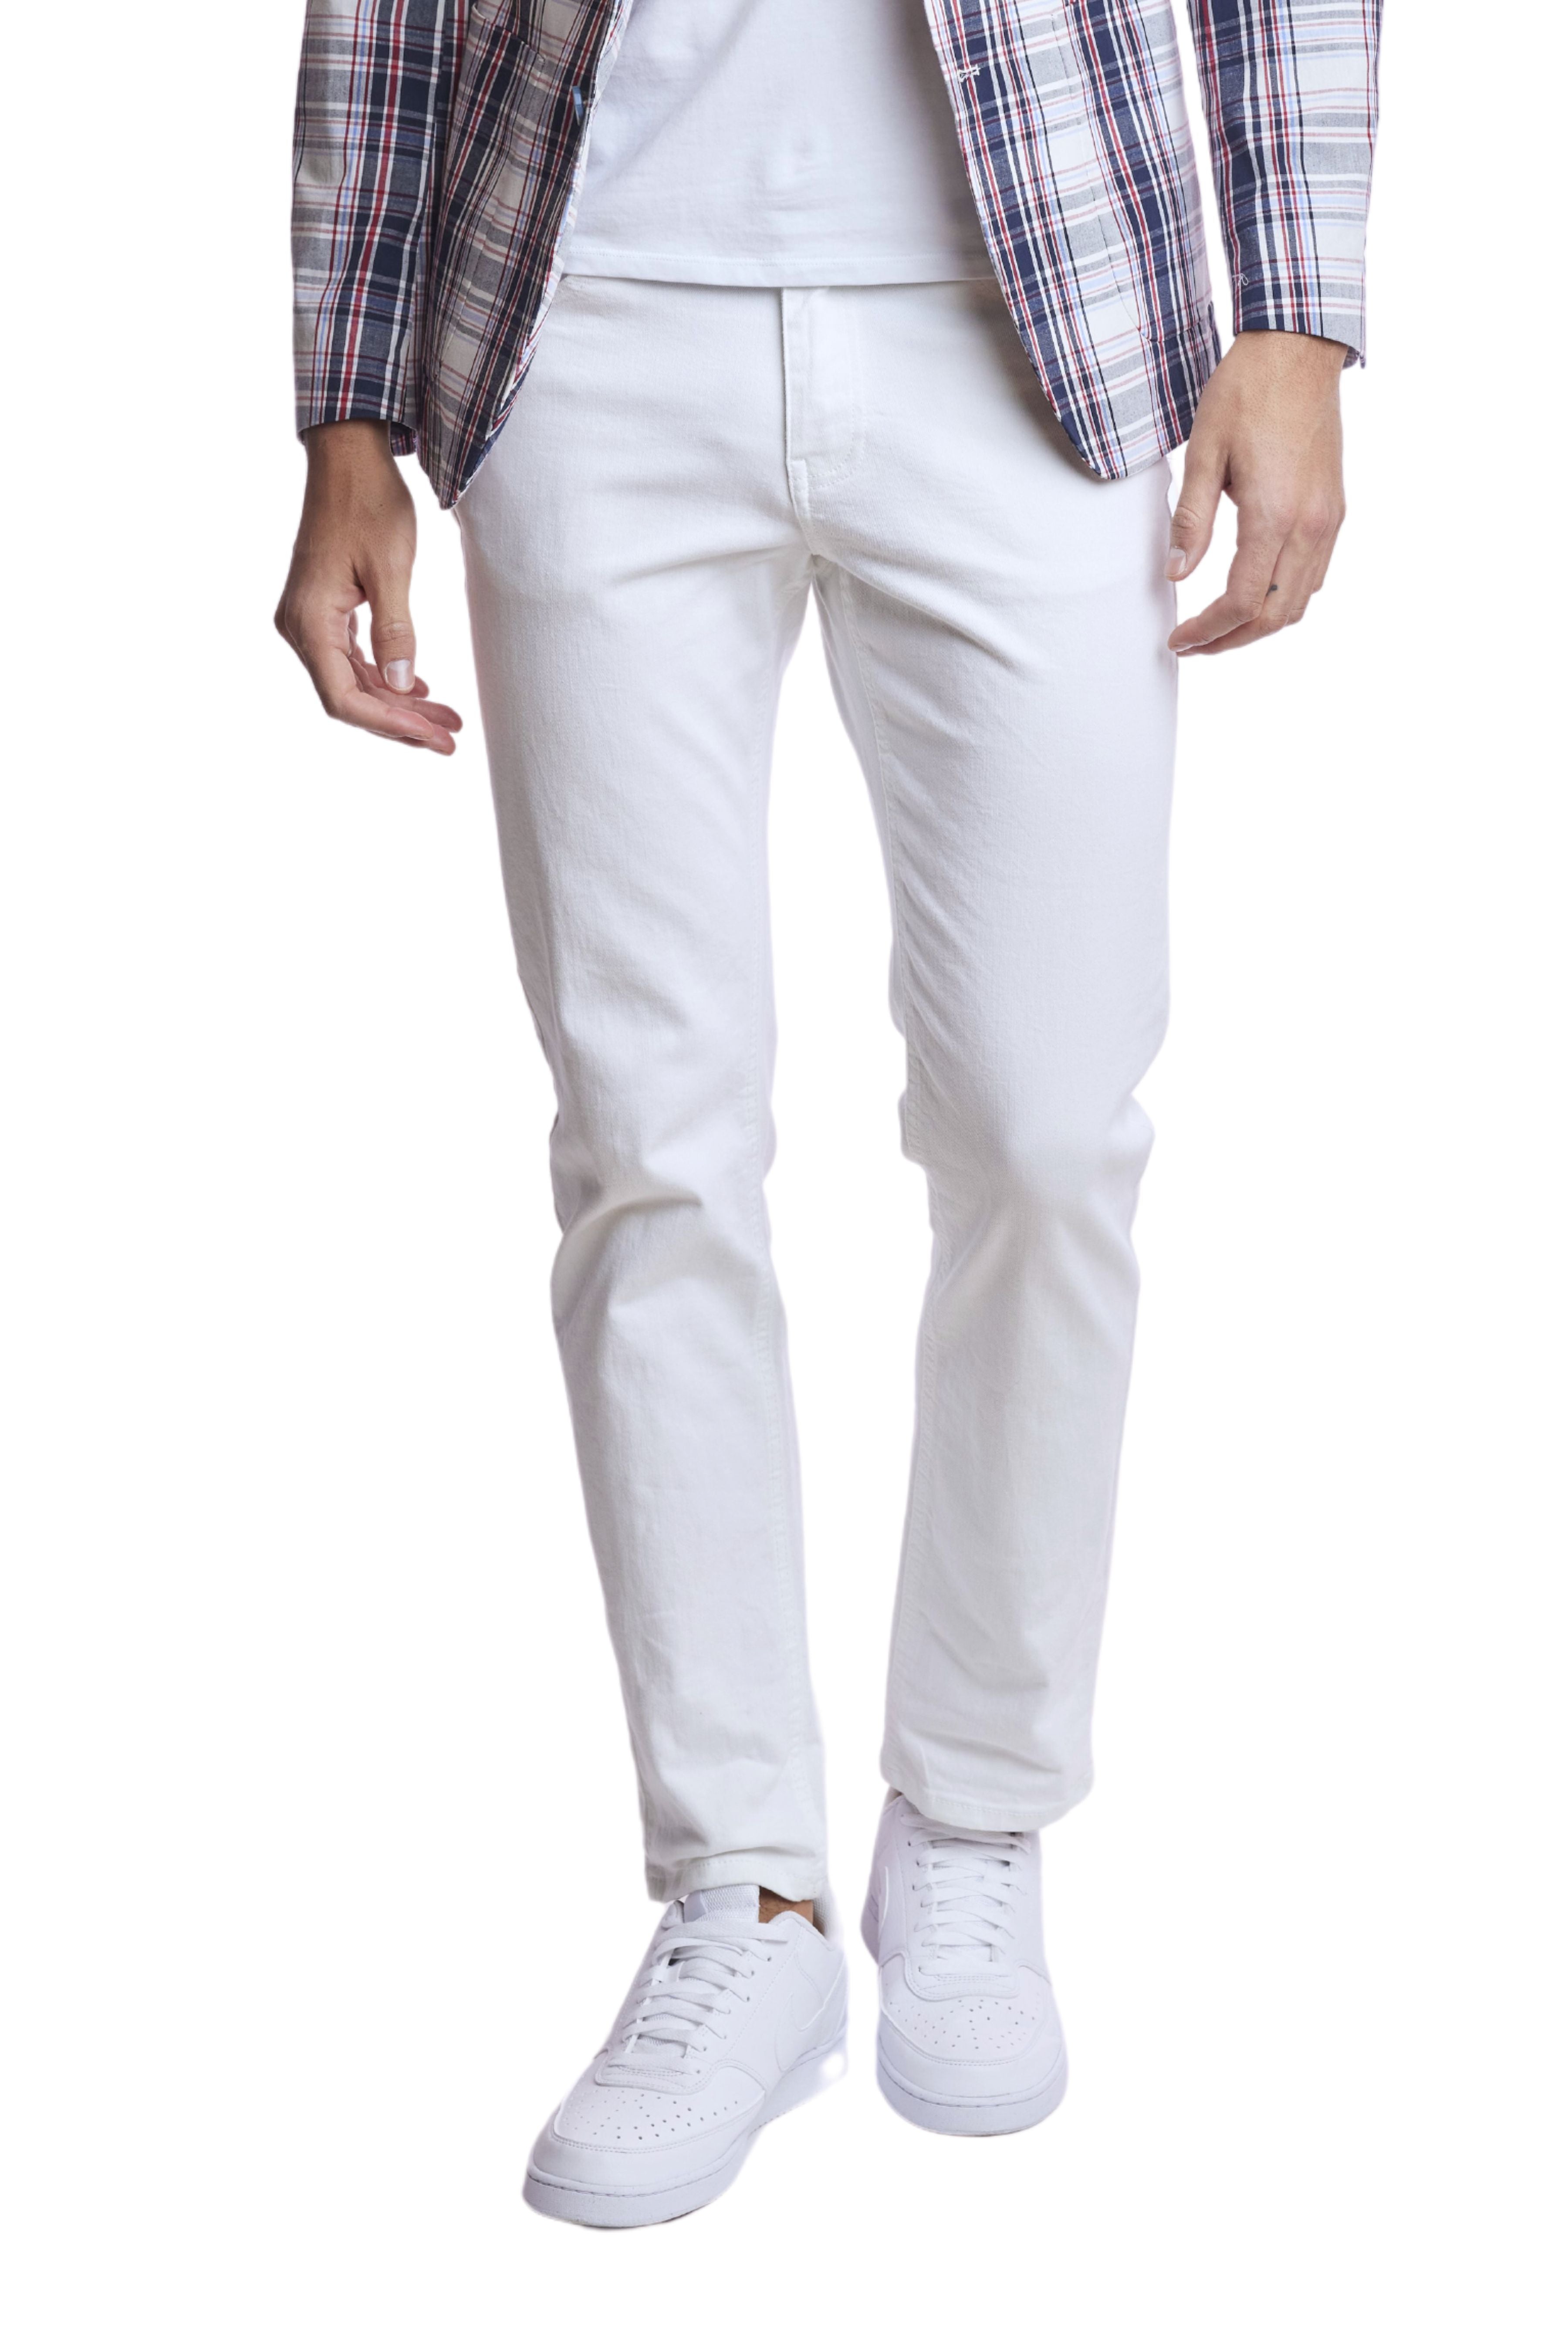 Rebel Jeans - slim - White Jeans